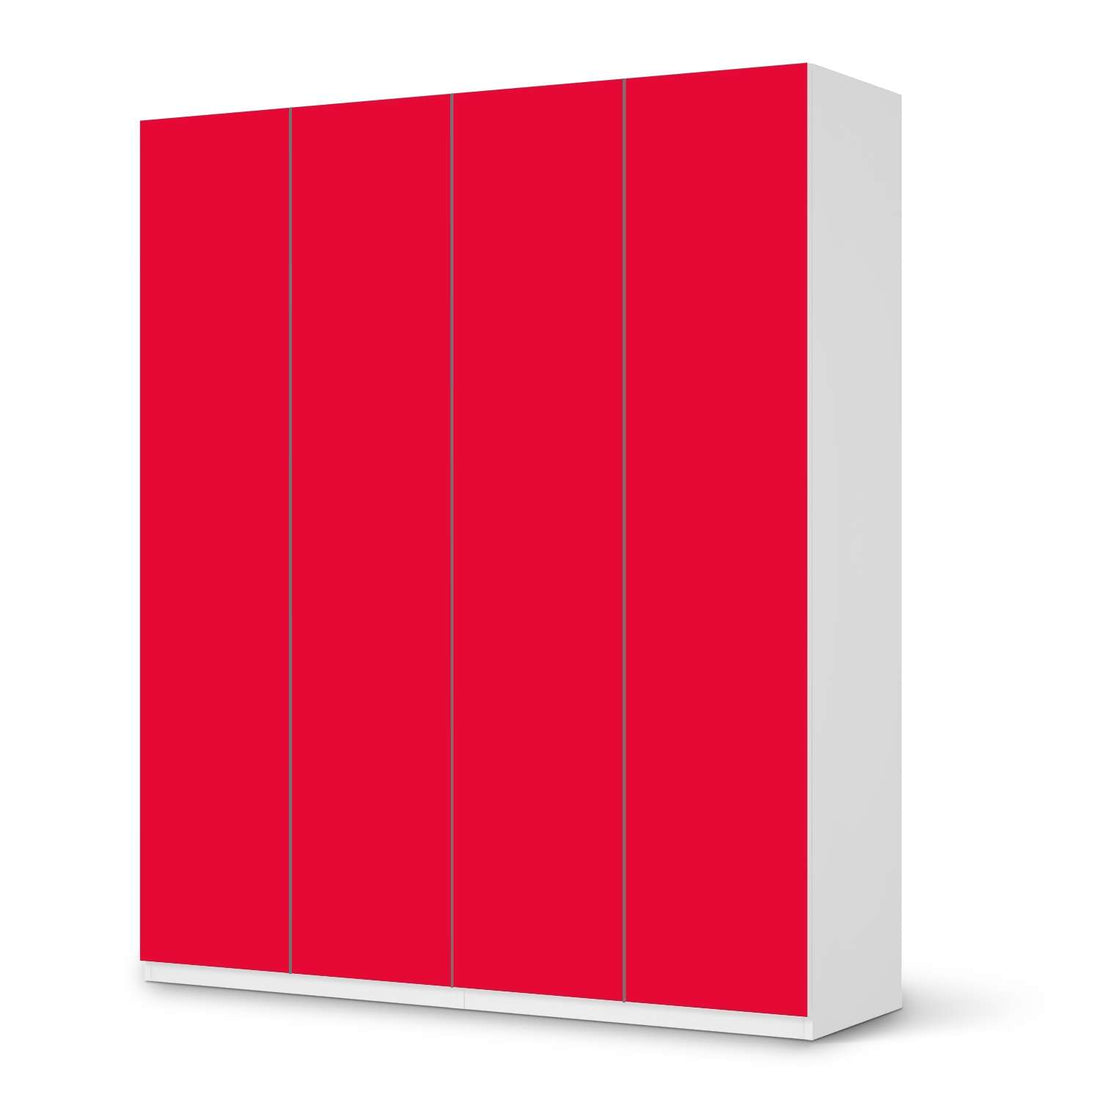 Möbelfolie Rot Light - IKEA Pax Schrank 236 cm Höhe - 4 Türen - weiss